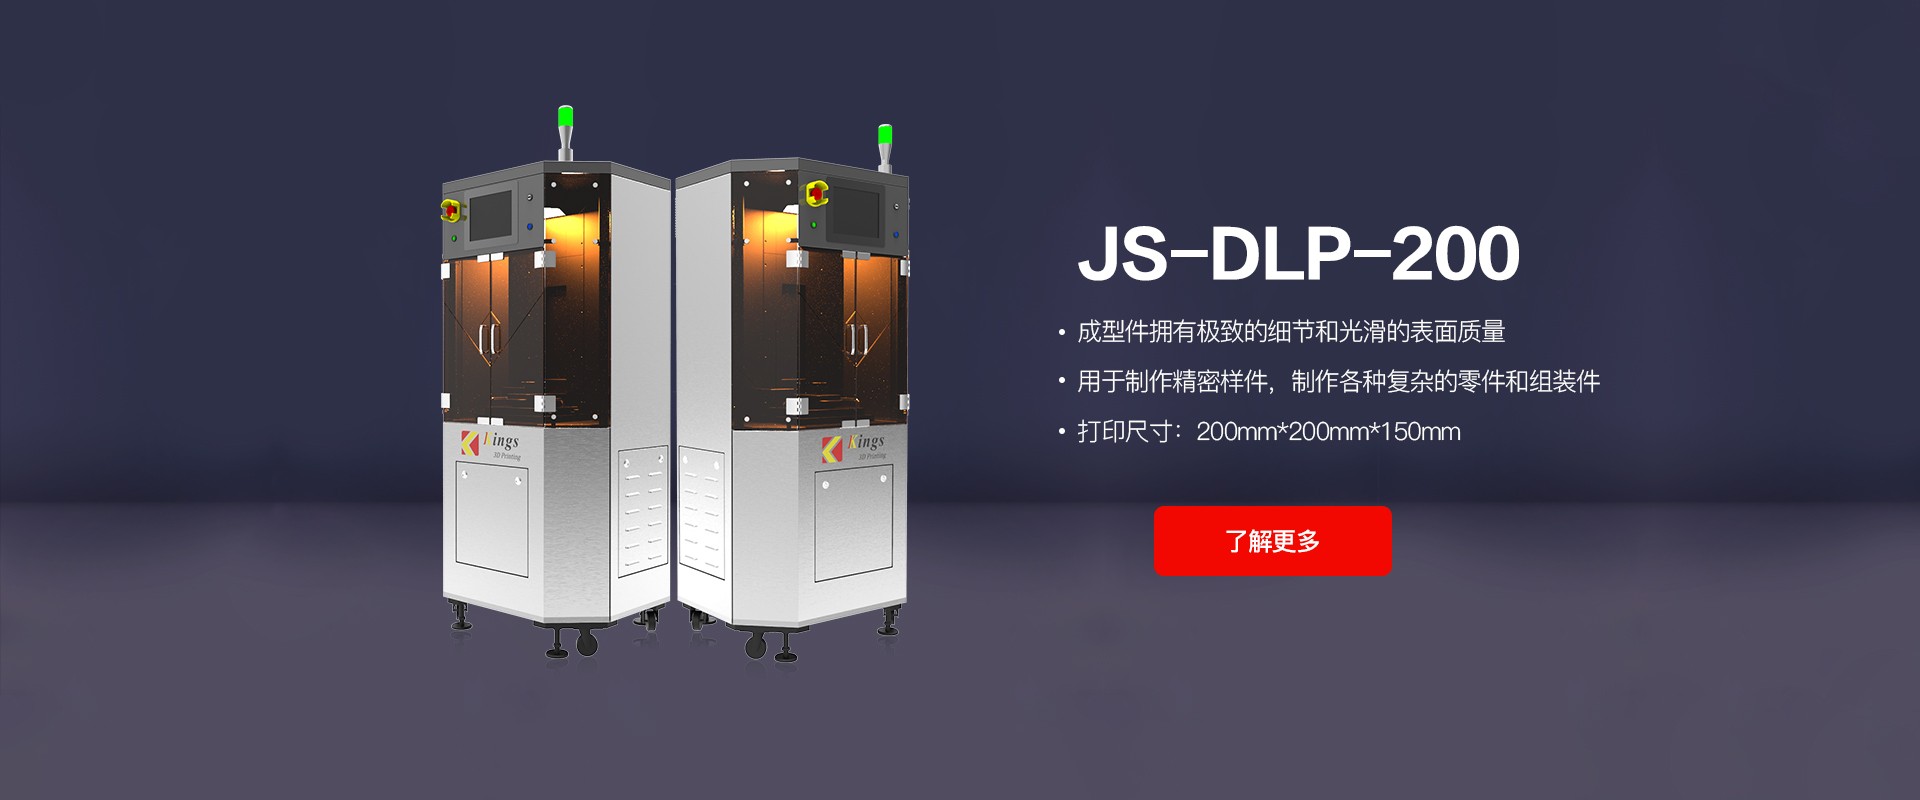 JS-DLP-200